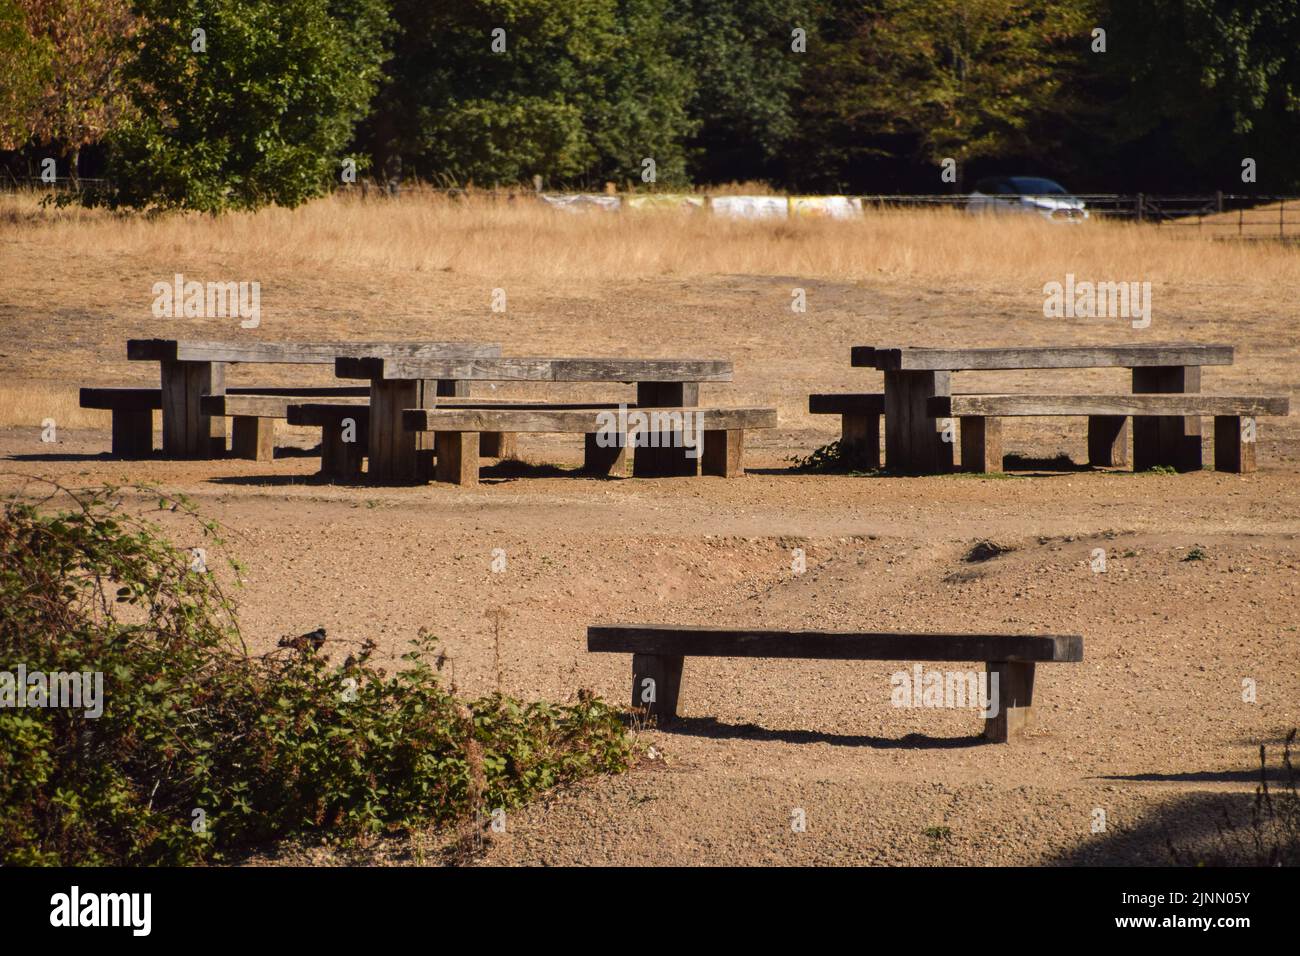 Leere Picknicktische sitzen in der sengenden Sonne im Wanstead Park im Nordosten Londons, während in Teilen Englands eine Dürre ausgerufen wird. Anhaltende Hitzewellen, die durch den vom Menschen verursachten Klimawandel verursacht wurden, haben einen Großteil Londons beeinflusst, mit Waldbränden und Dürren in der gesamten Hauptstadt. Stockfoto